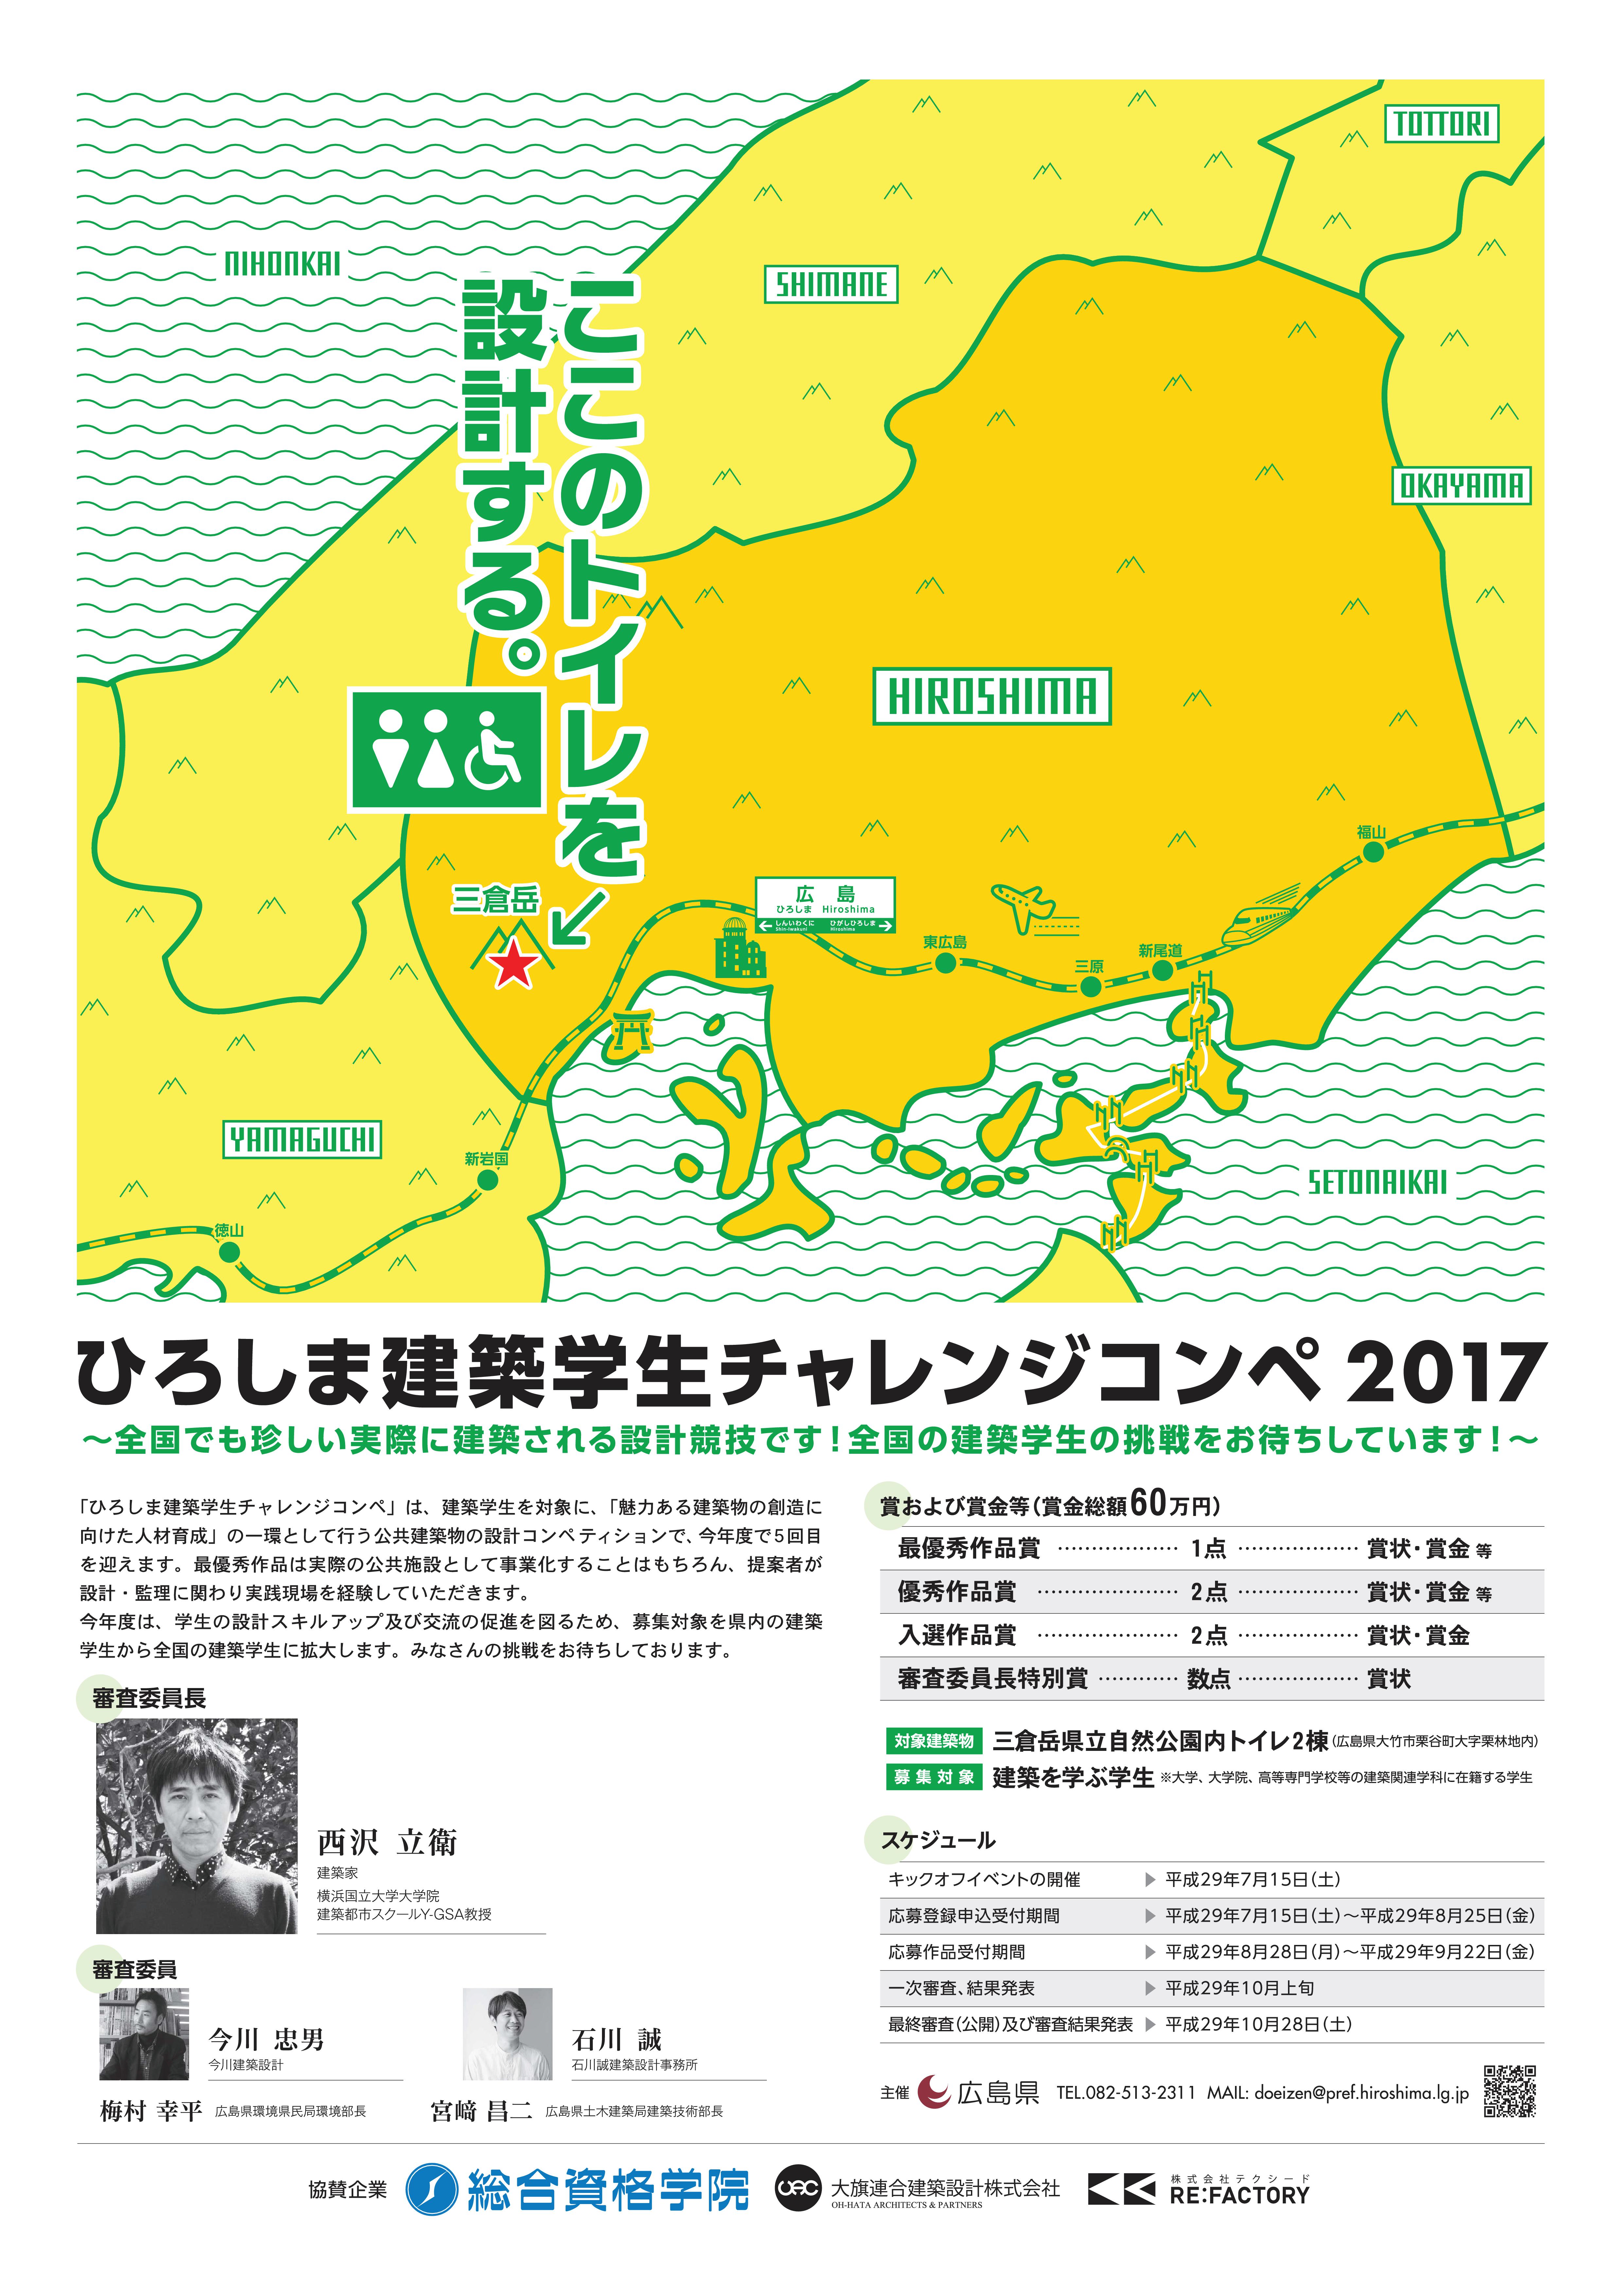 広島チャレンジコンペ2017